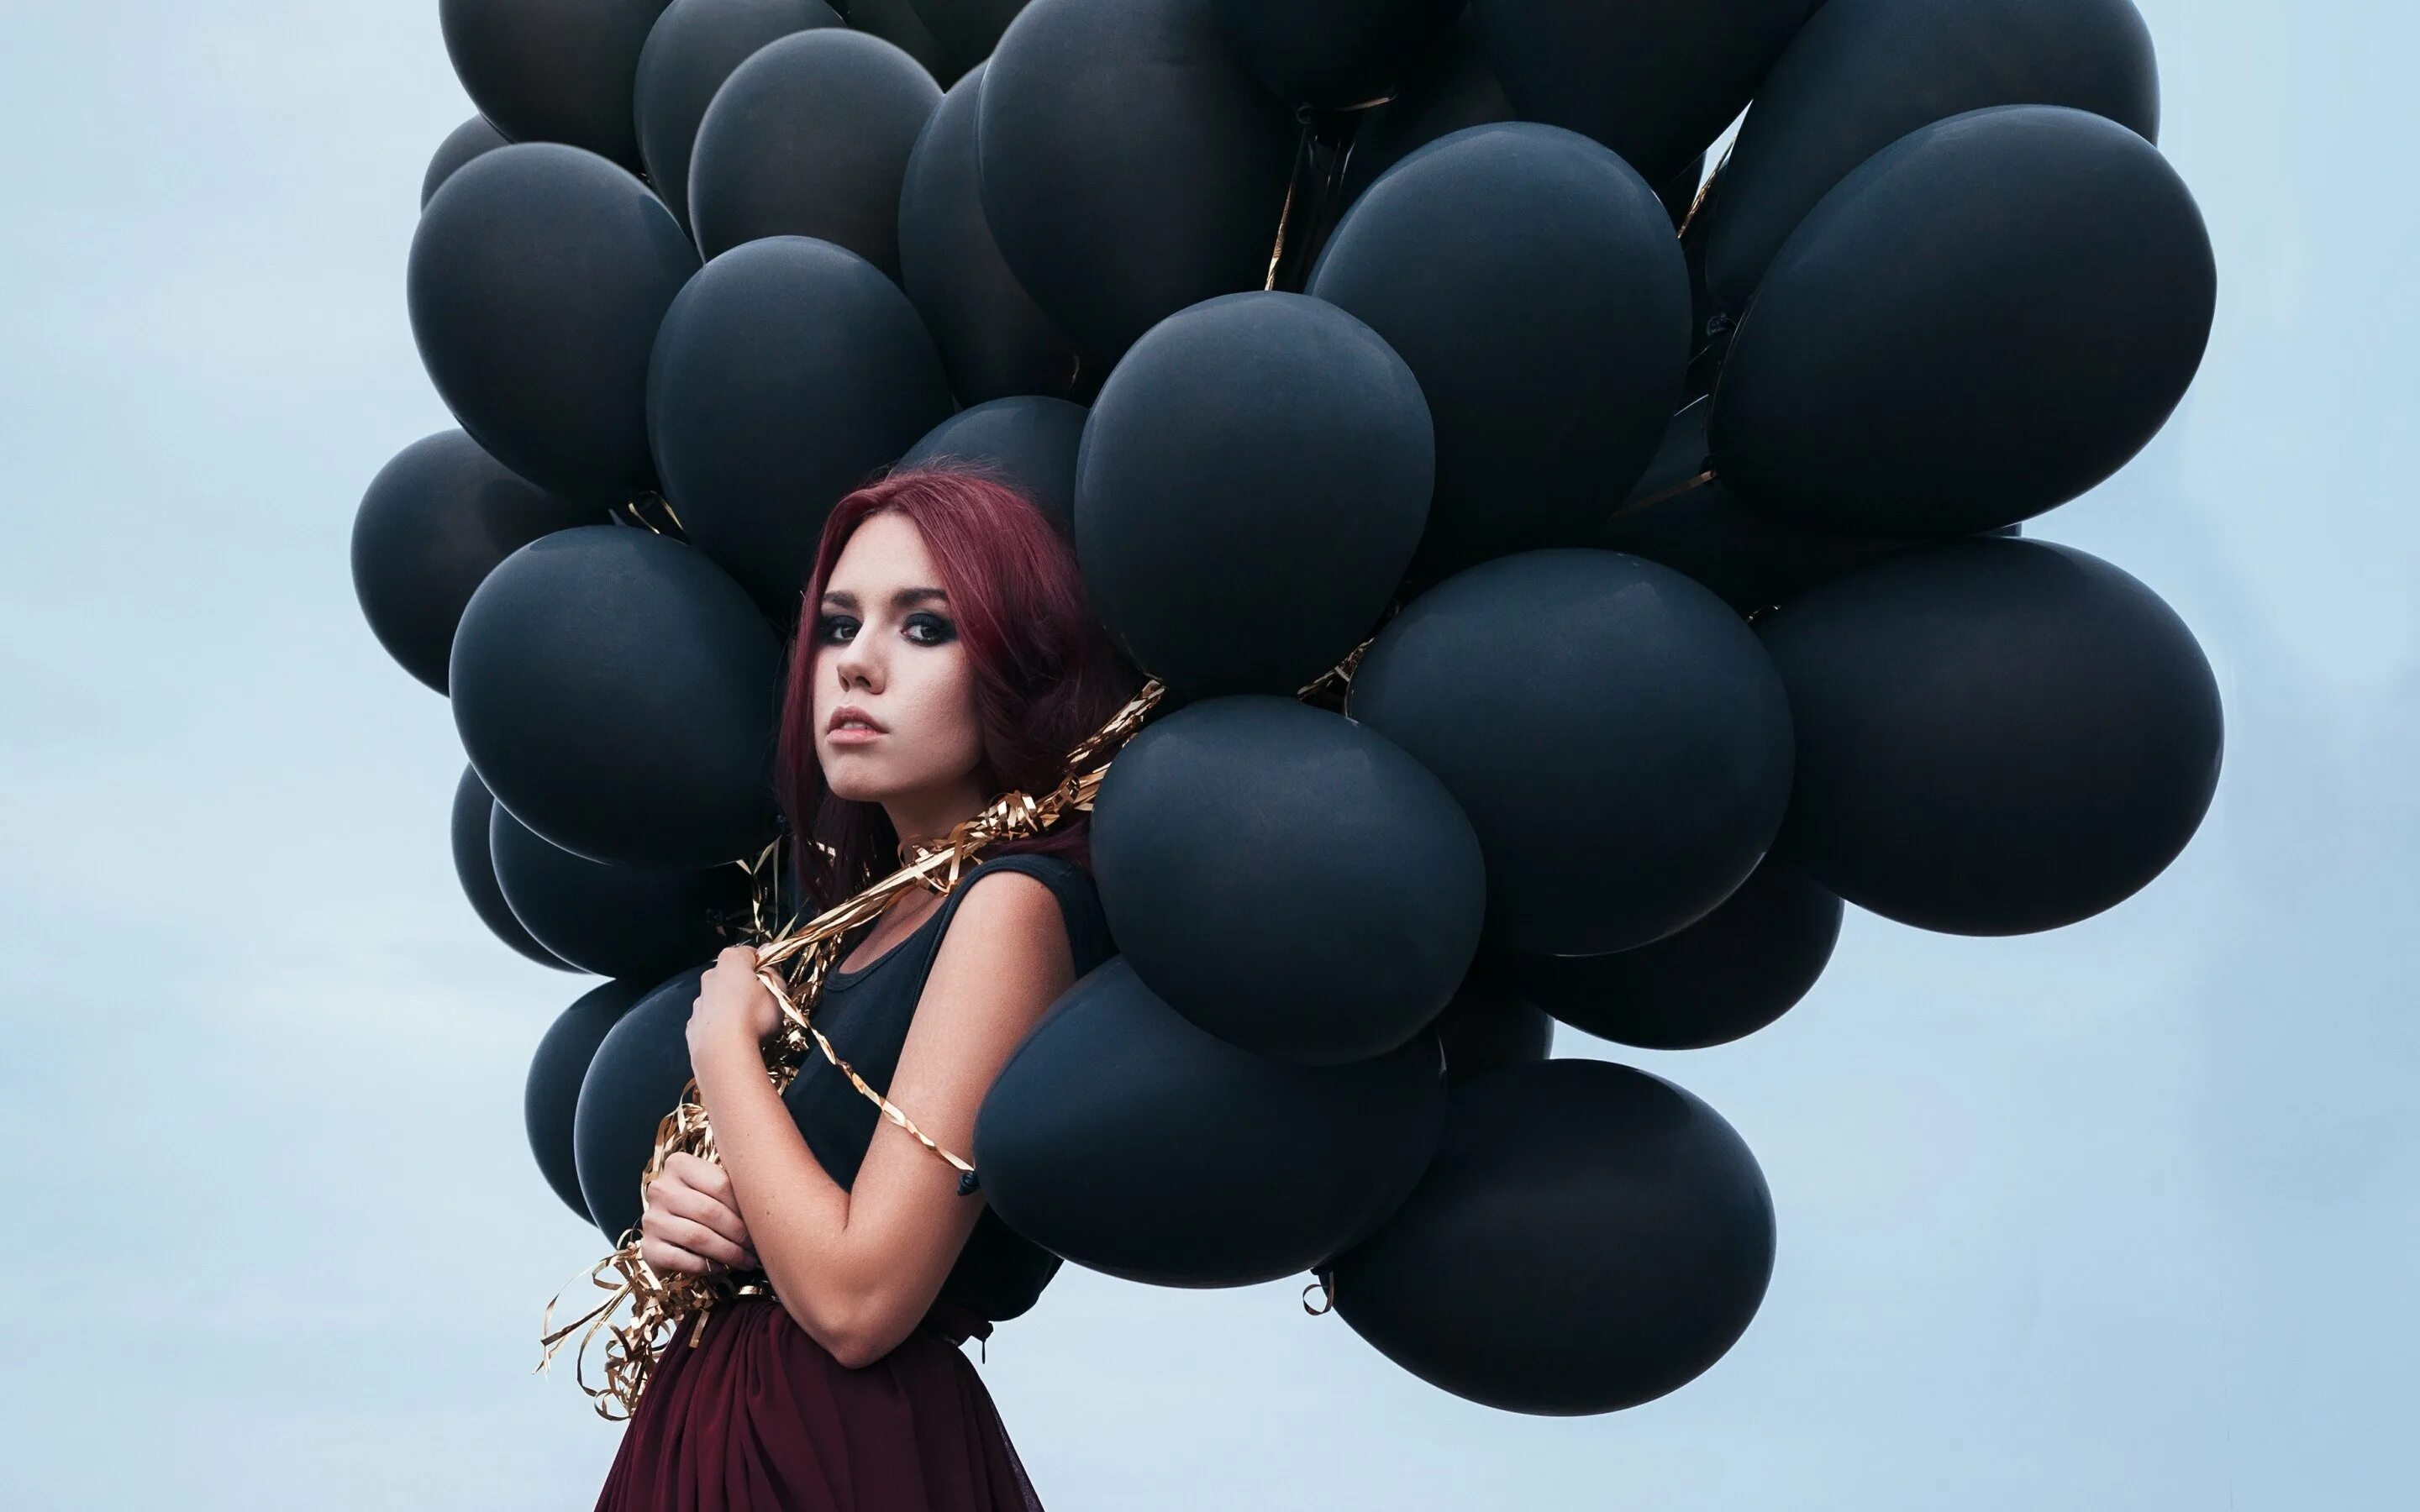 Женщина на воздушном шаре. Девушка с воздушными шарами. Красивые шарики для девушки. Фотосессия с воздушными шарами. Девушка с шариками воздушными.